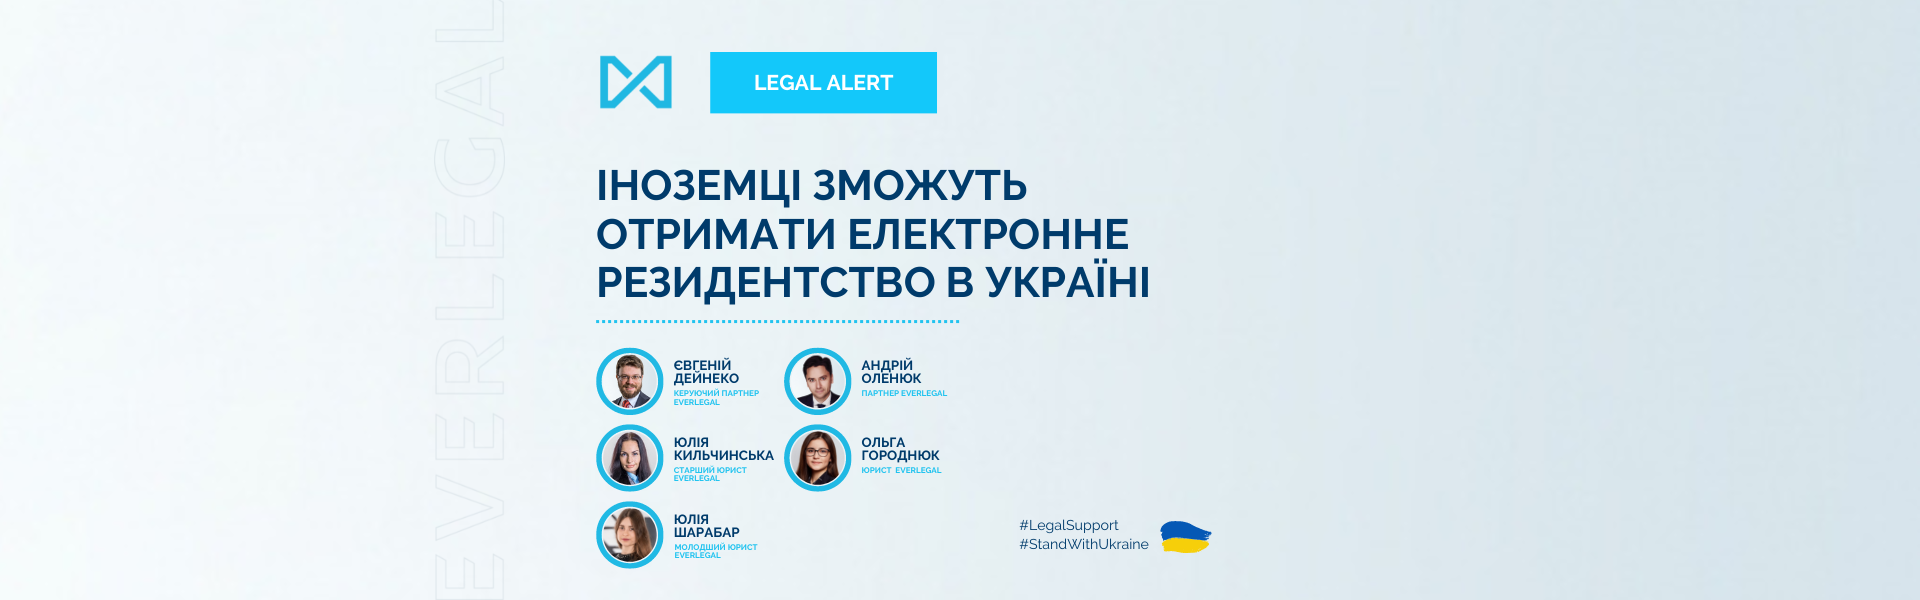 Іноземці зможуть отримати електронне резидентство в Україні